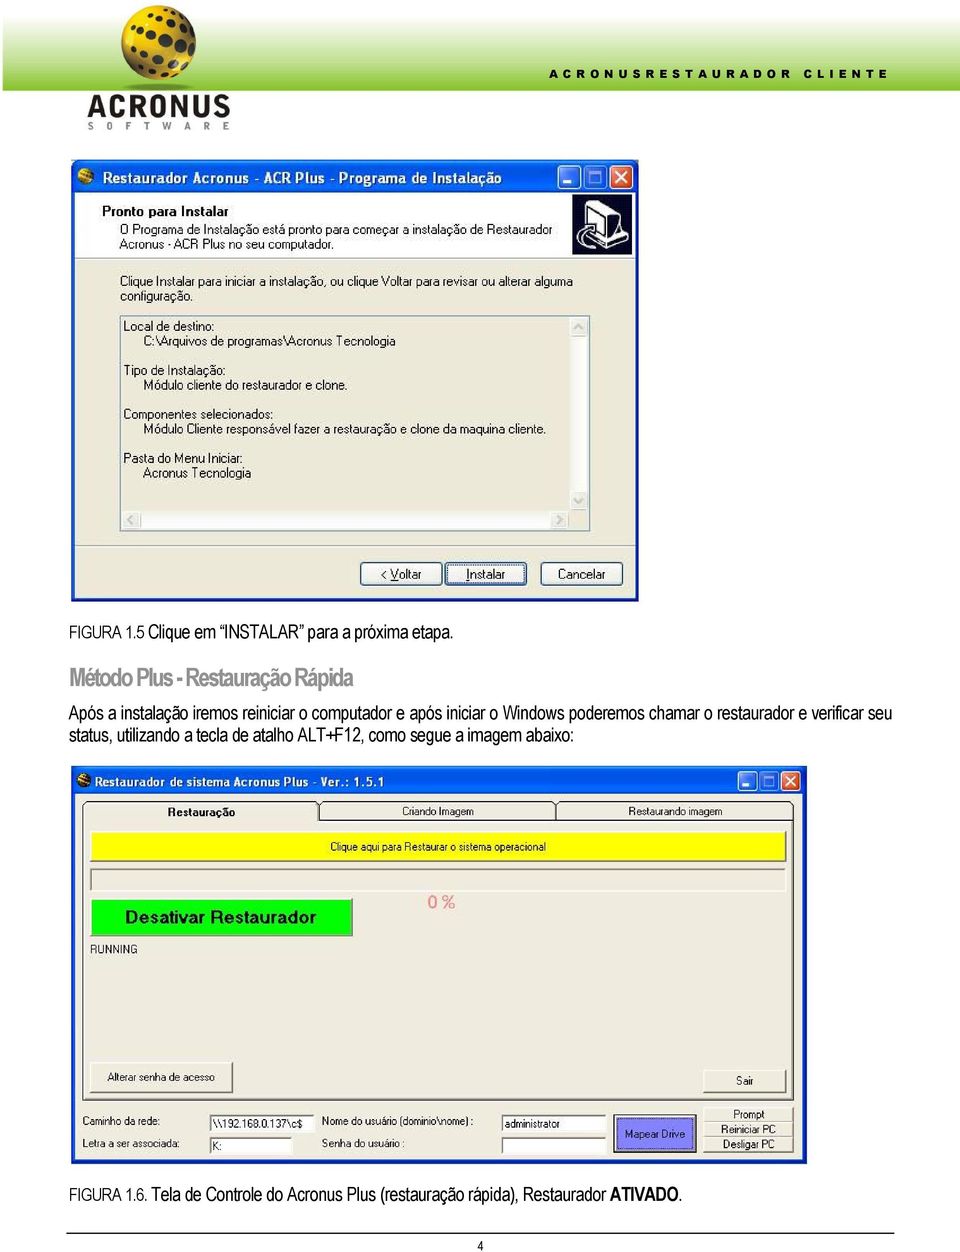 Windows poderemos chamar o restaurador e verificar seu status, utilizando a tecla de atalho ALT+F12,